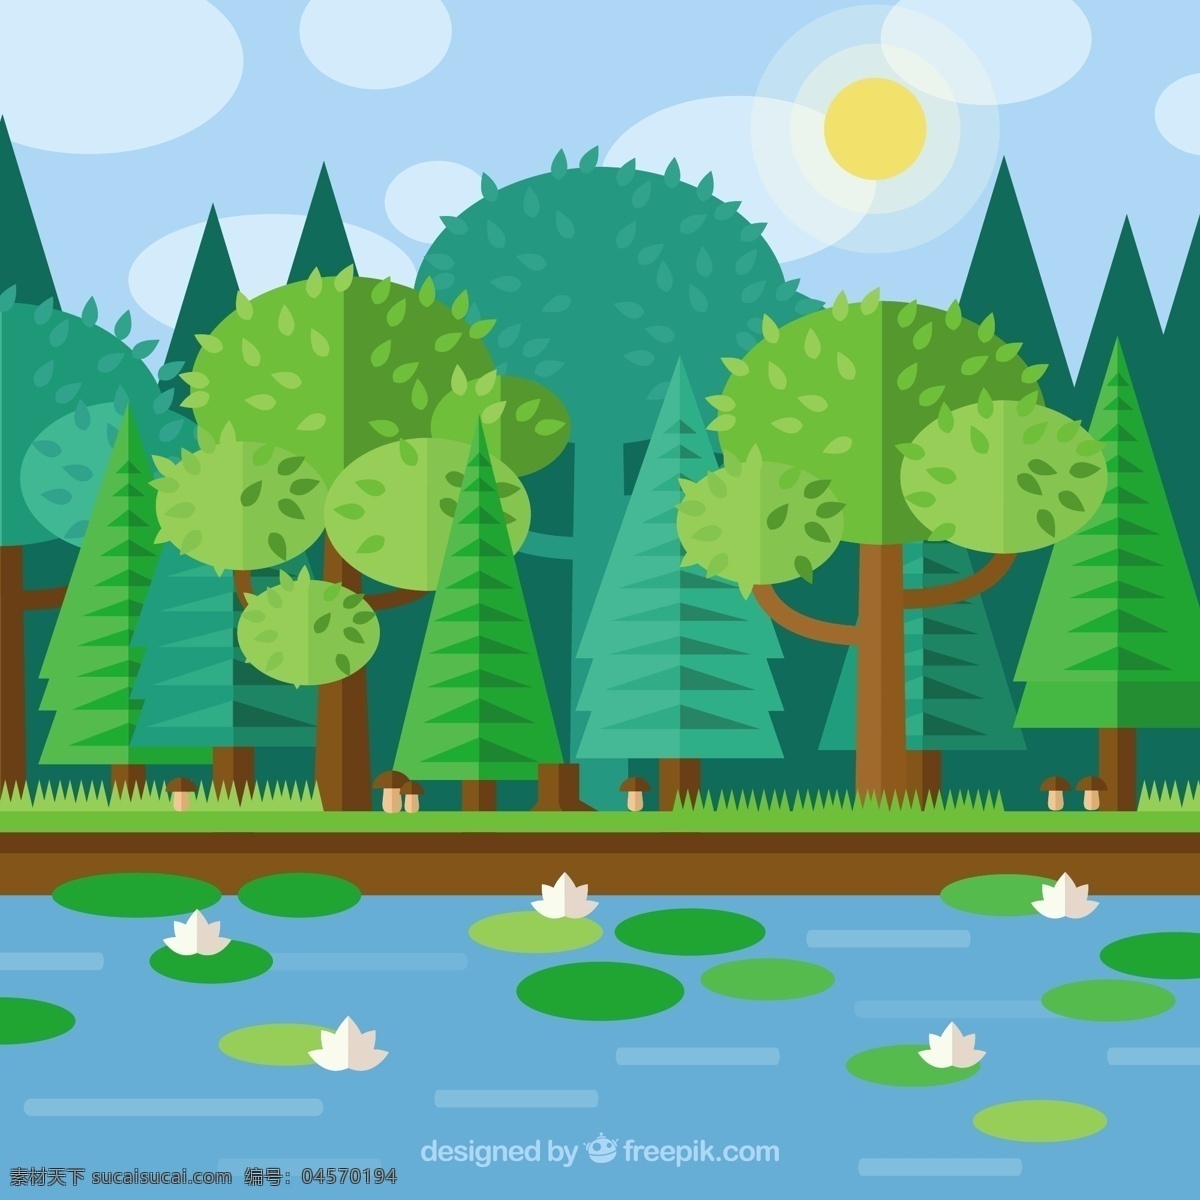 平面 几何 森林 湖泊 花卉 水 自然 绿化 叶 草 春 景观 平坦 树叶 树木 平面设计 环境 多边形 青色 天蓝色